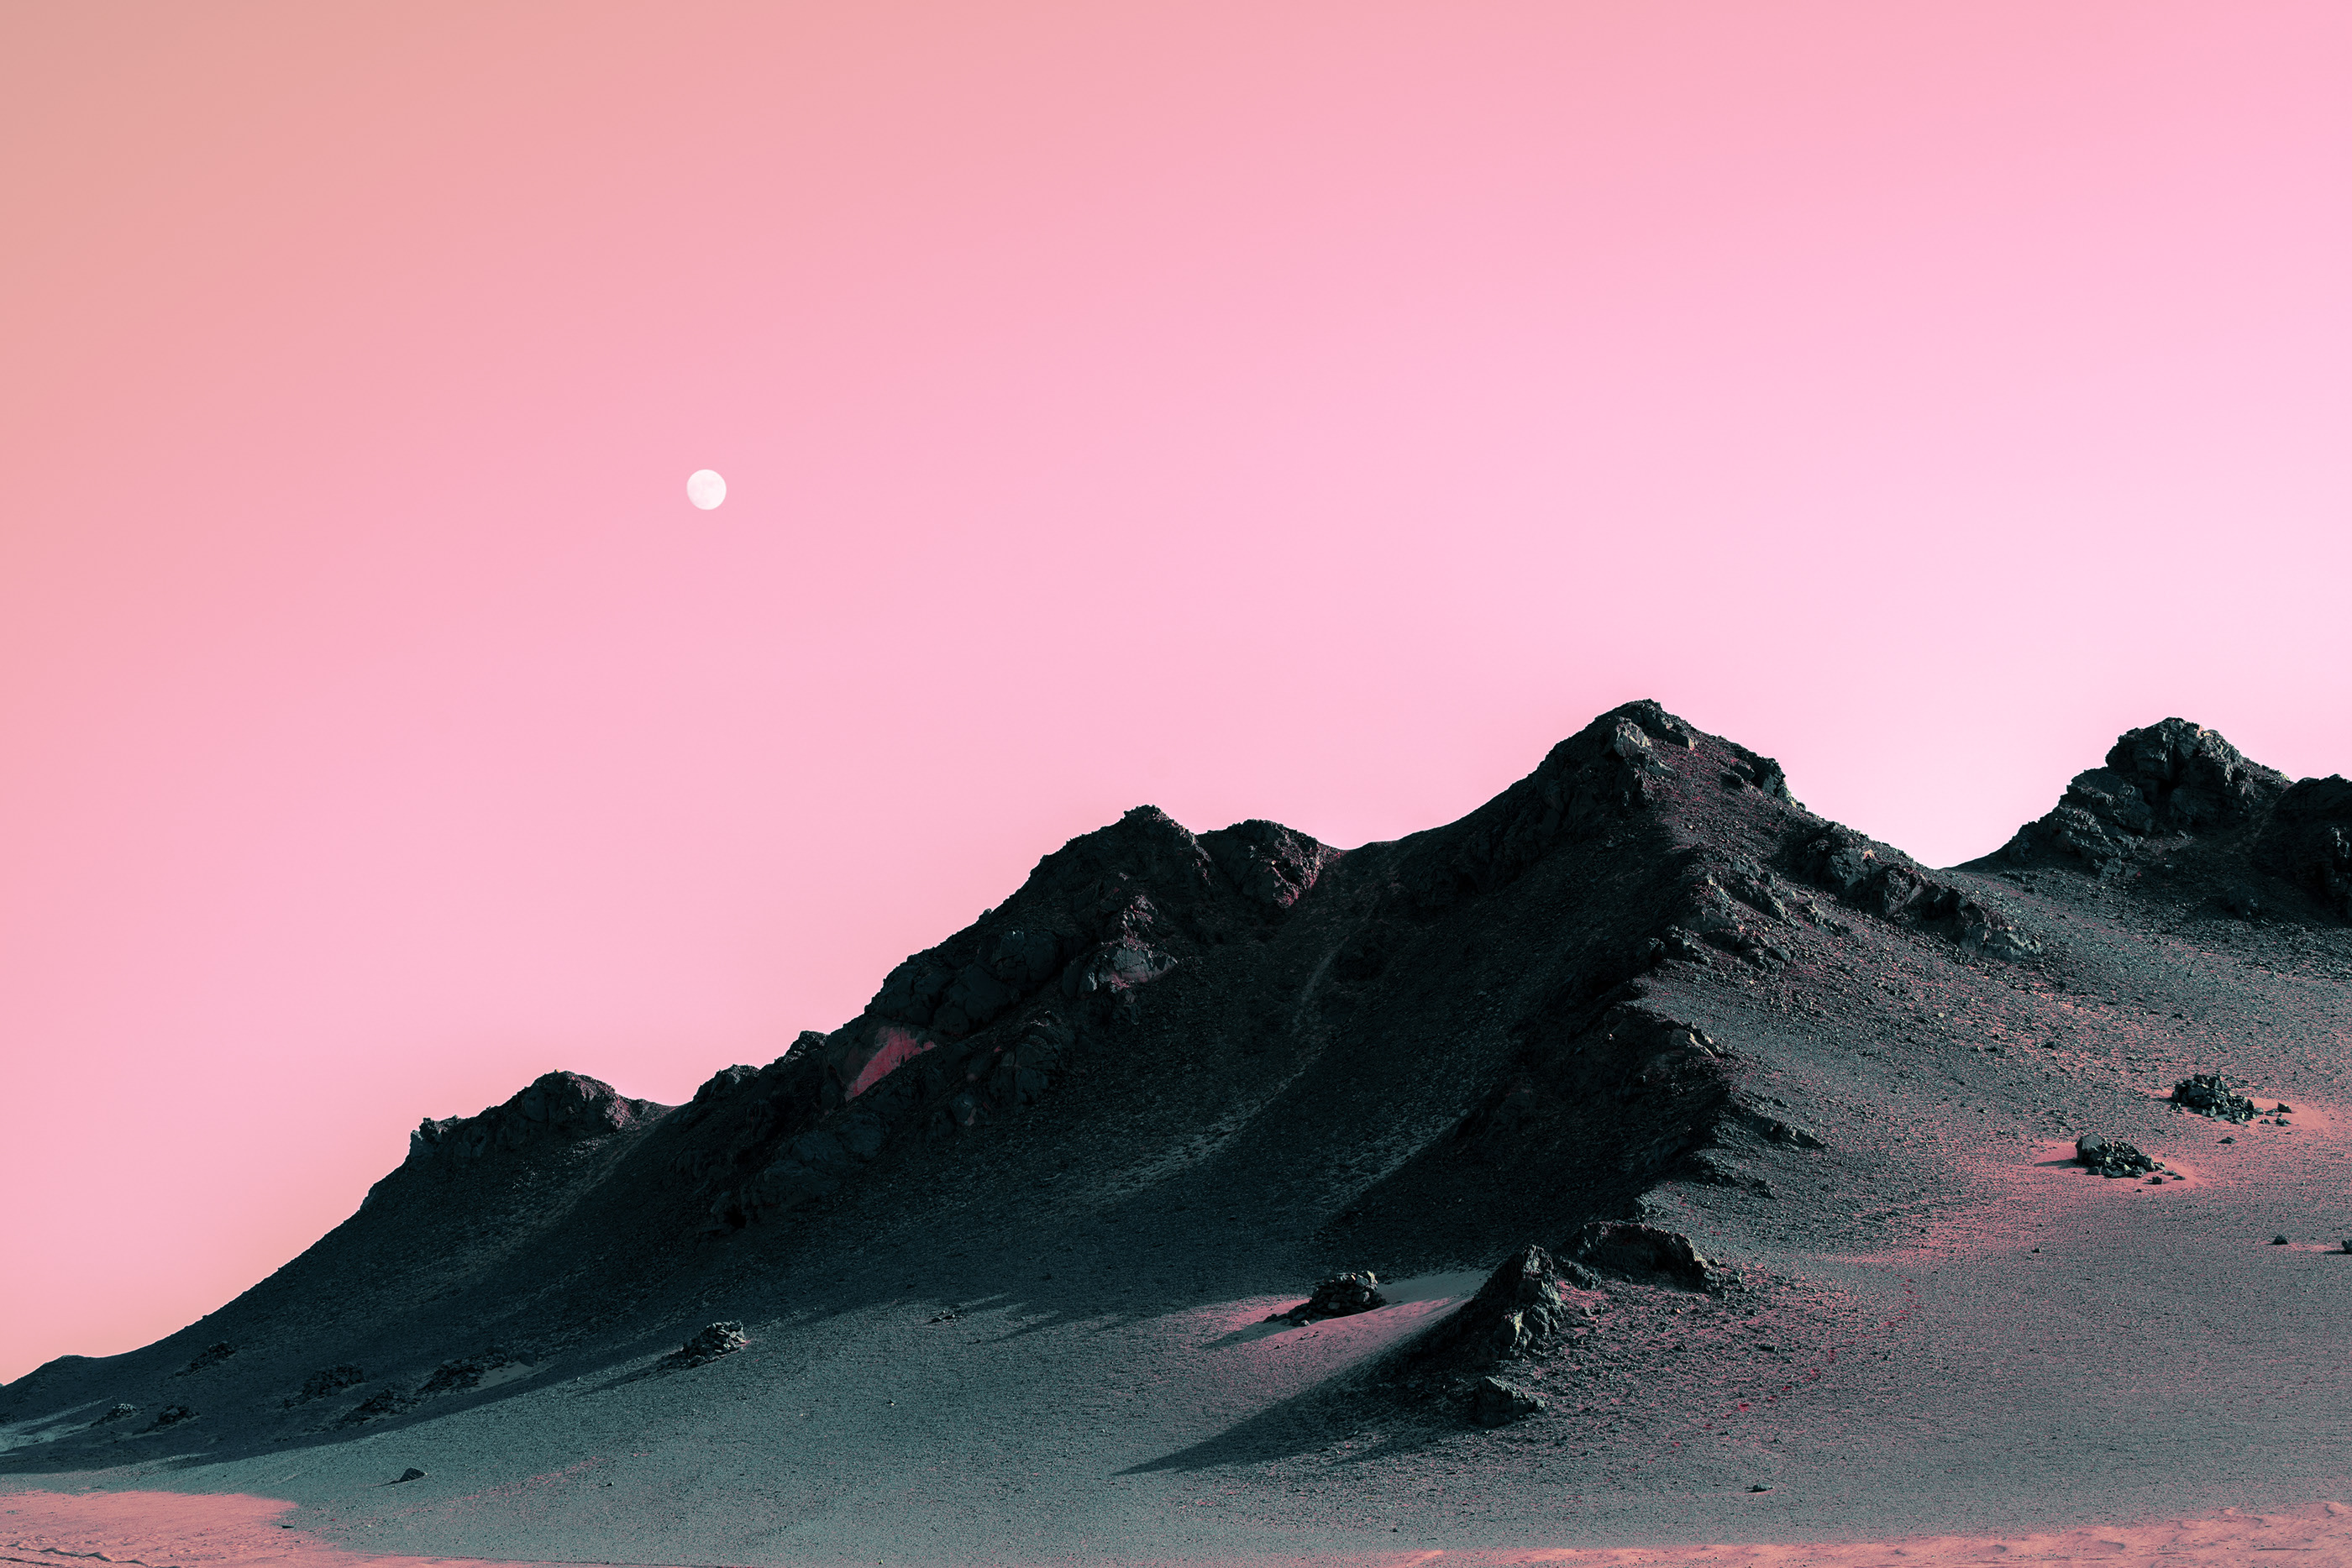 Desert Gobi Desert Rocks Landscape Pink Sky Moon Qinghai 2800x1867